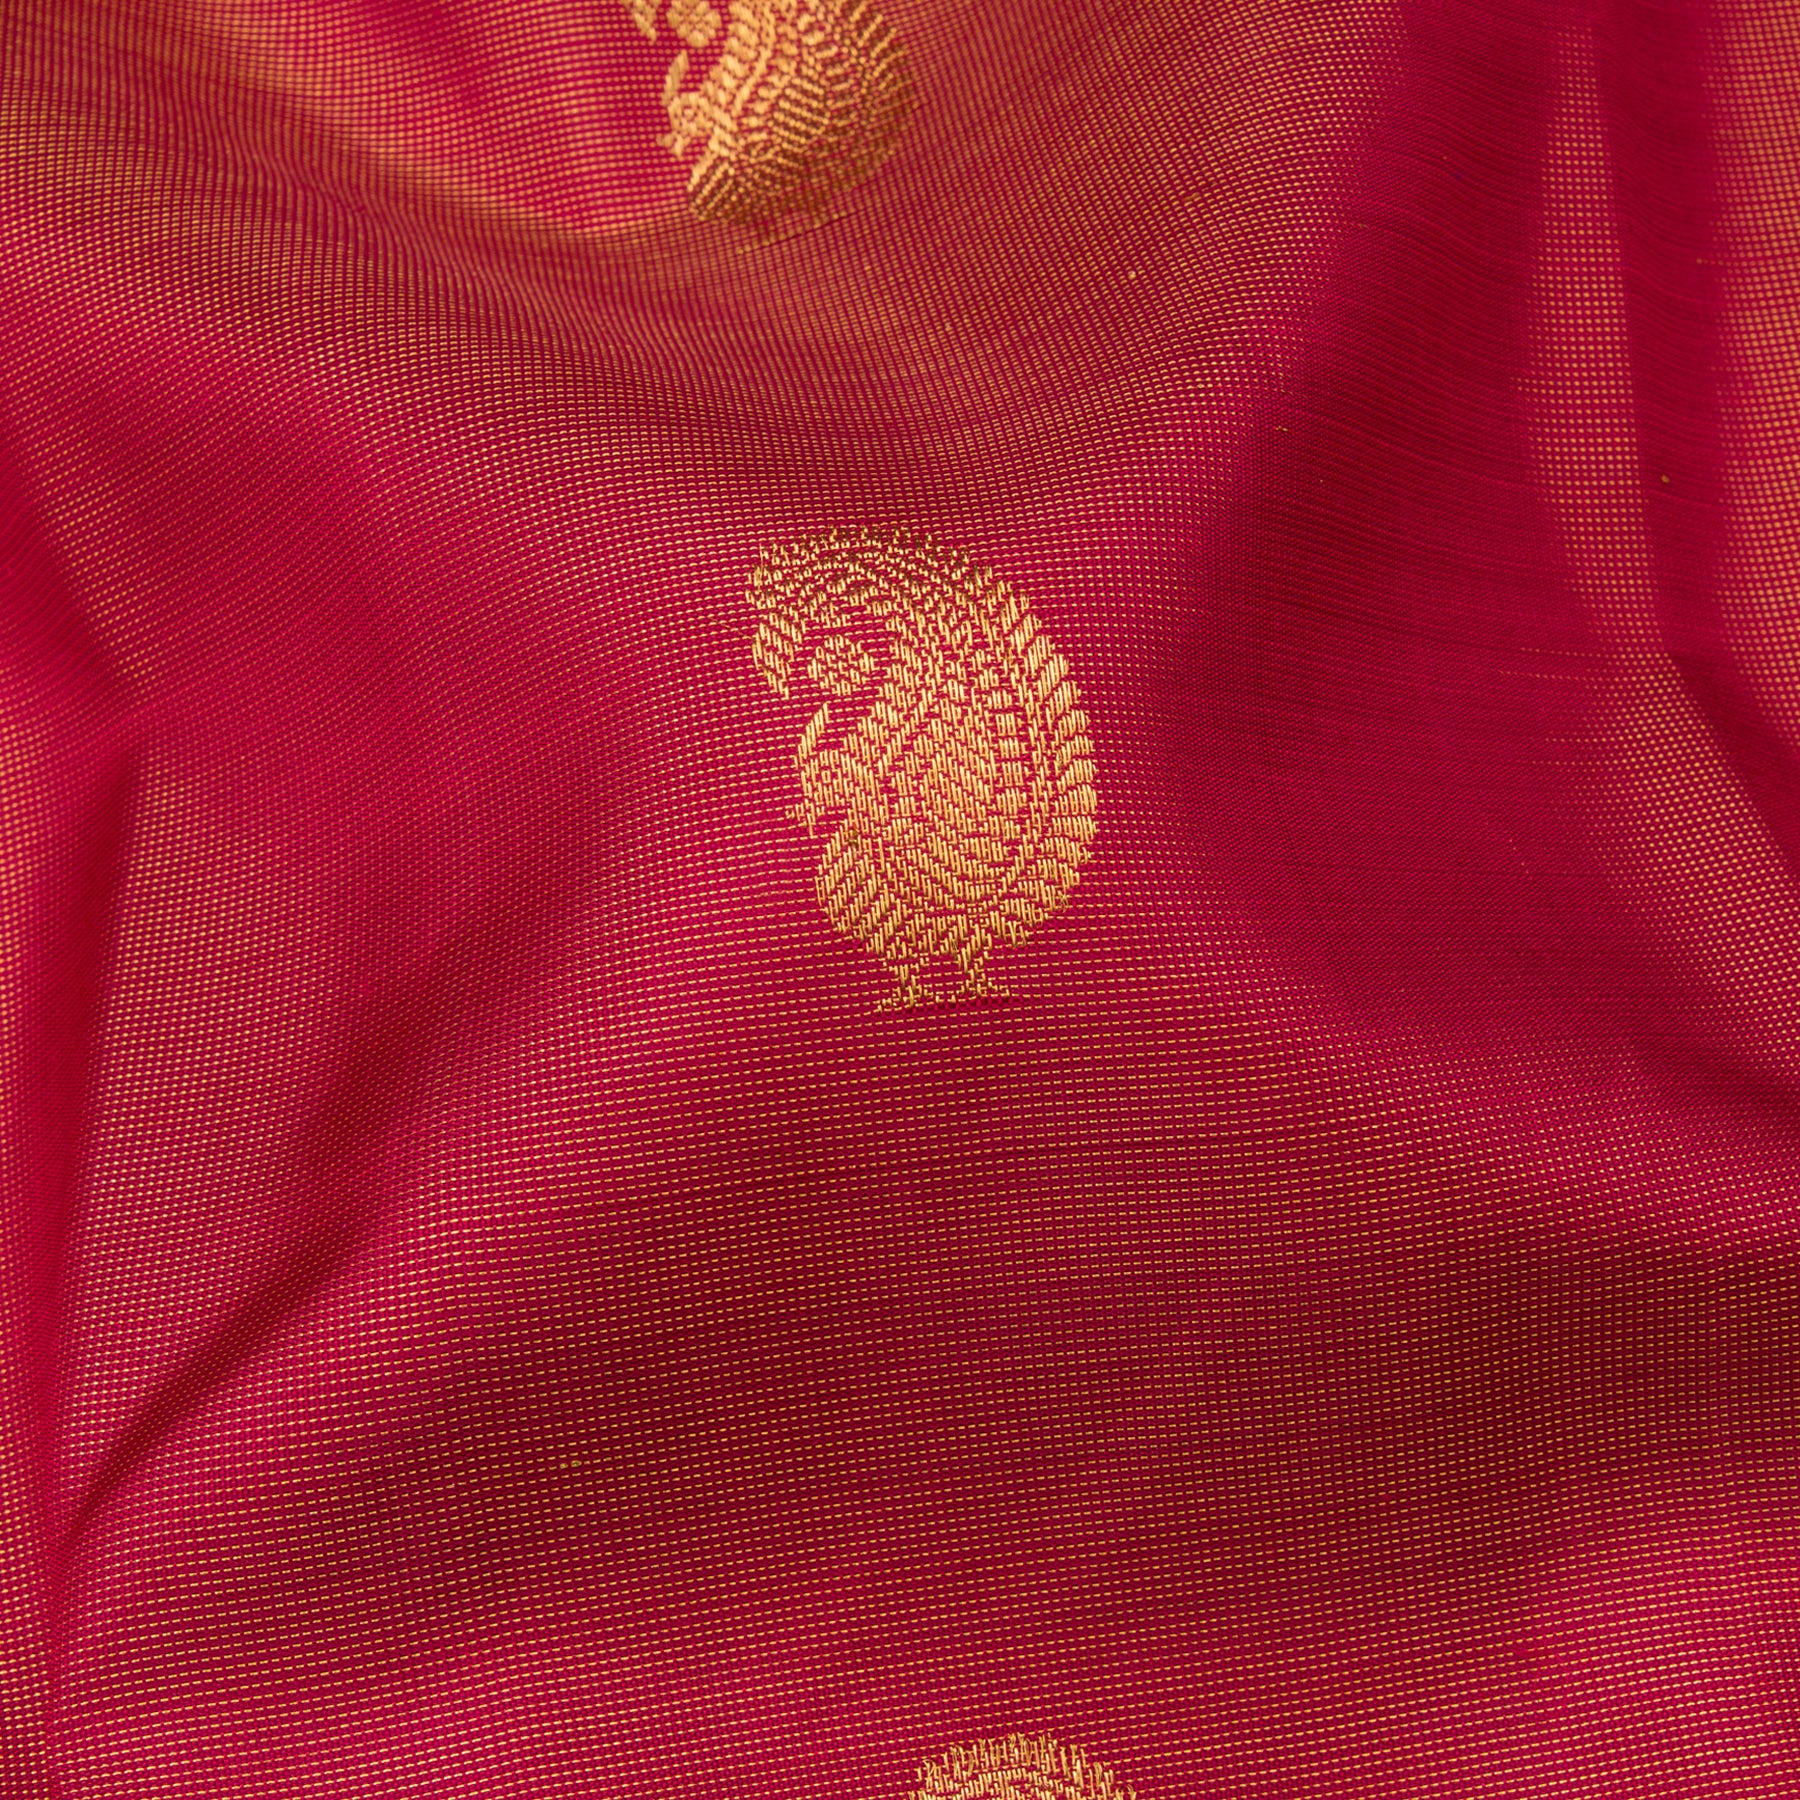 Kanakavalli Kanjivaram Silk Sari 24-110-HS001-00528 - Fabric View